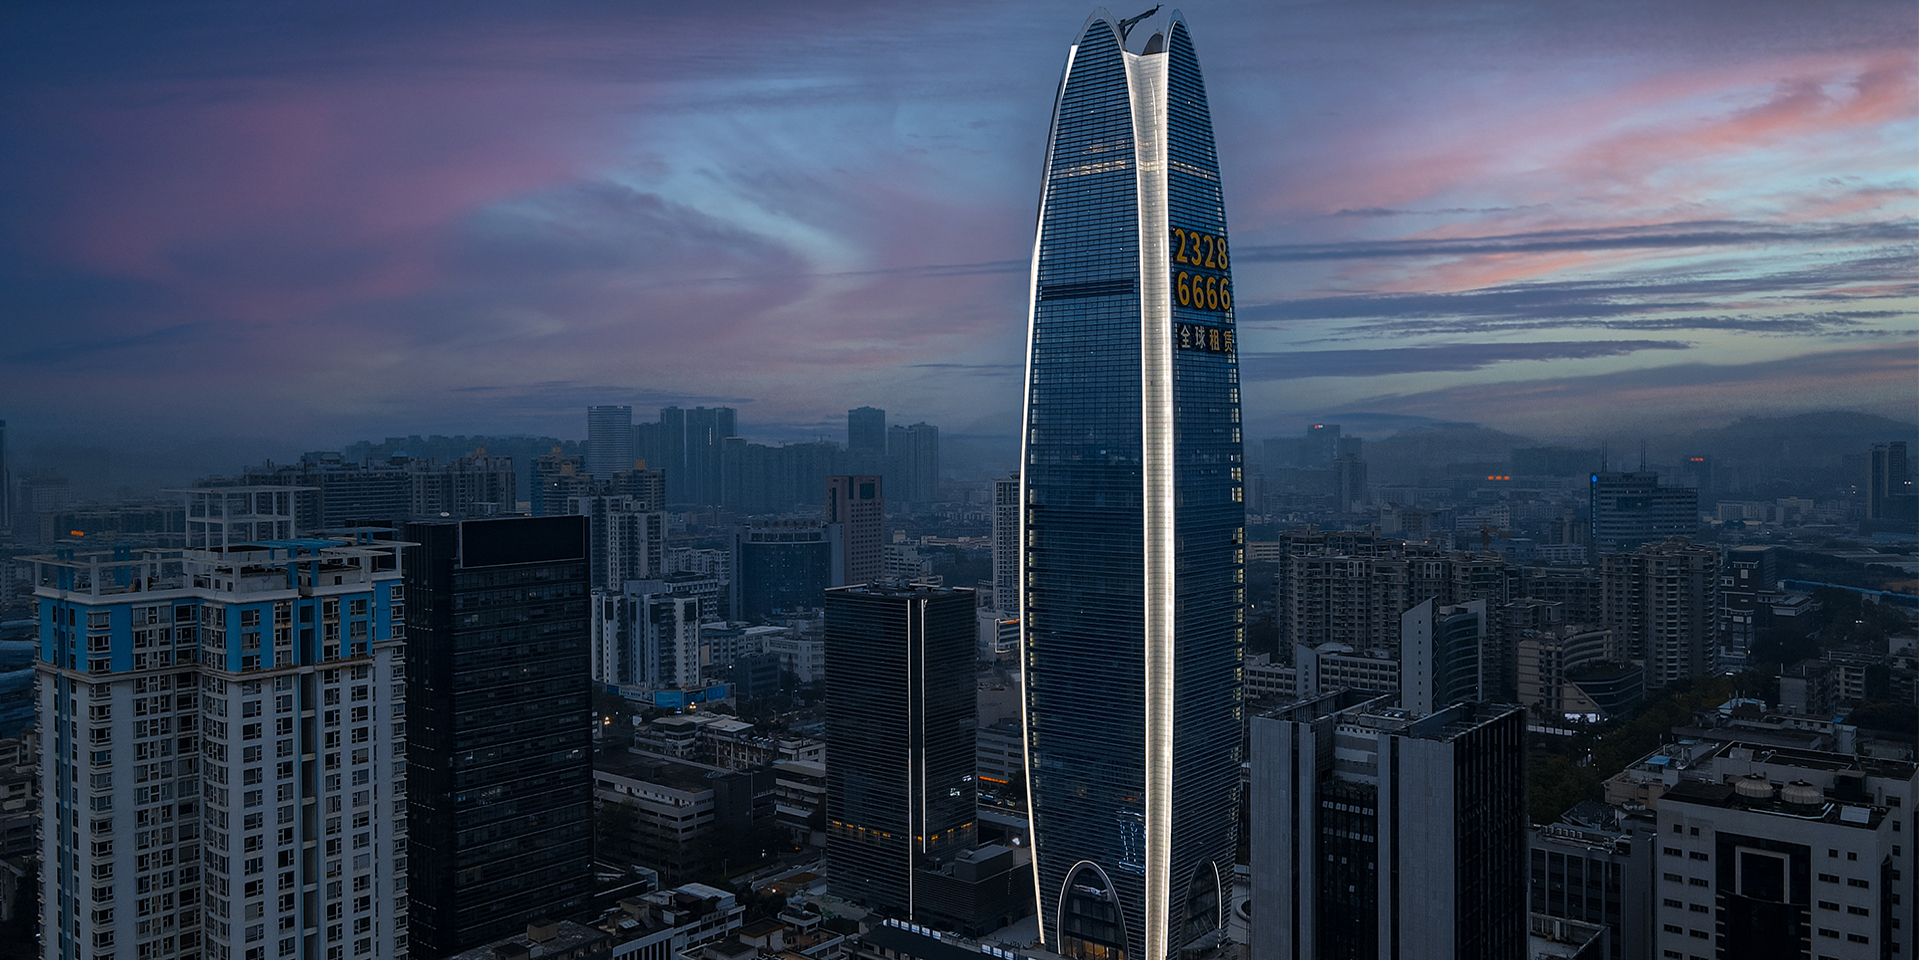 Curtain wall lighting project of Shenzhen hengmingzhu Financial Building